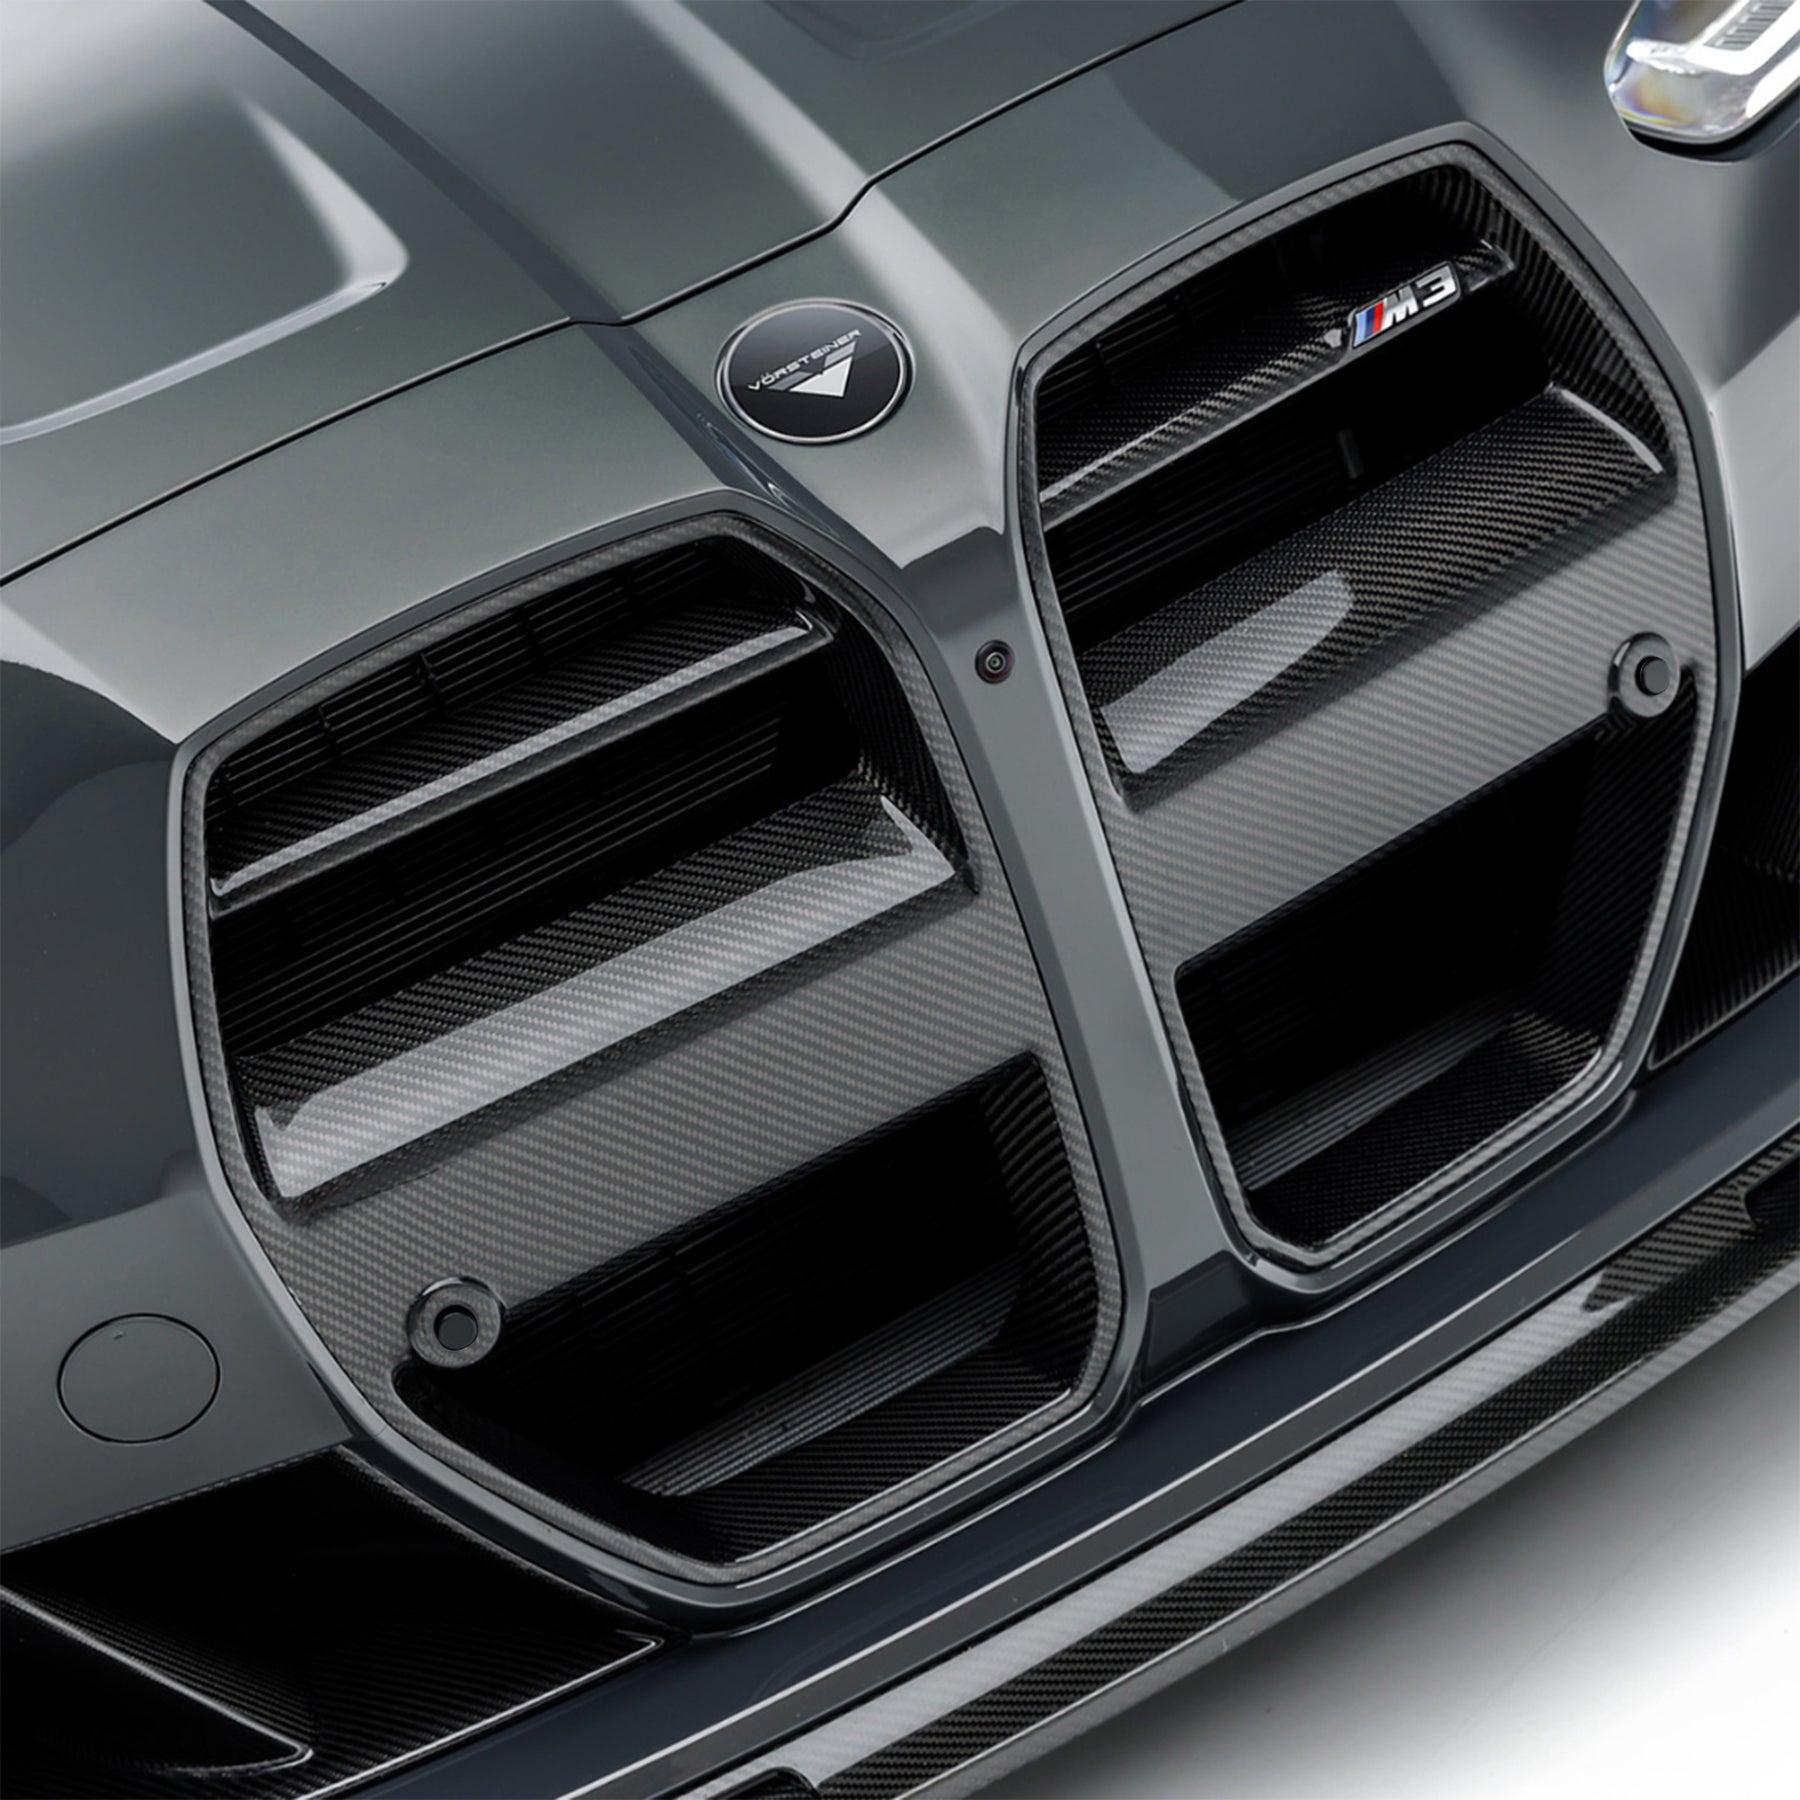 BMW G8X M3 | M4 Carbon Fiber Front Motorsport Grille - Vorsteiner Wheels  - Aero - [tags]